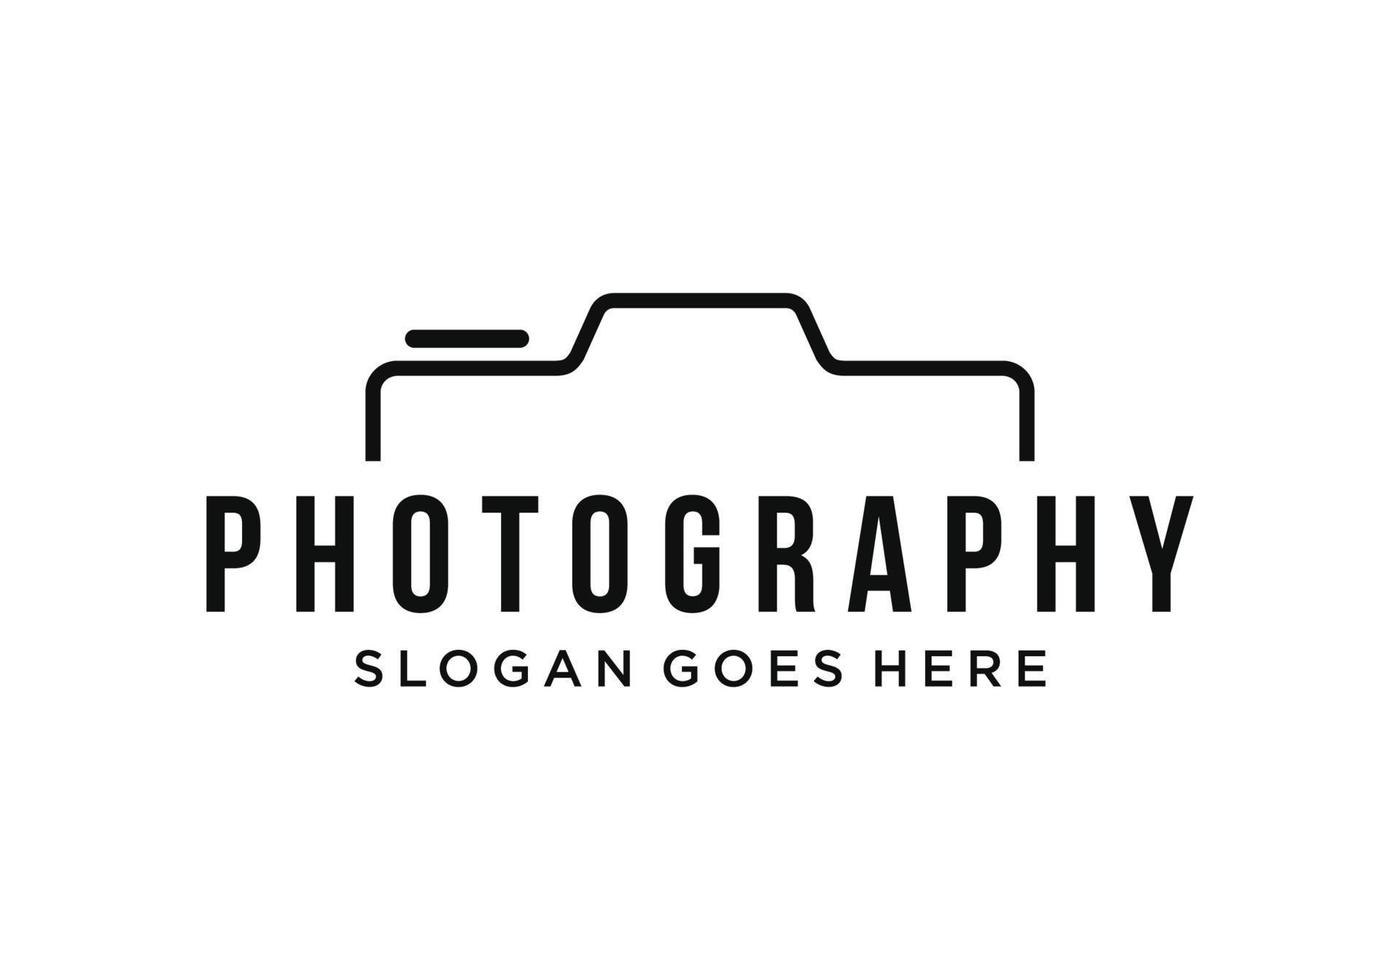 la photographie logo conception vecteur